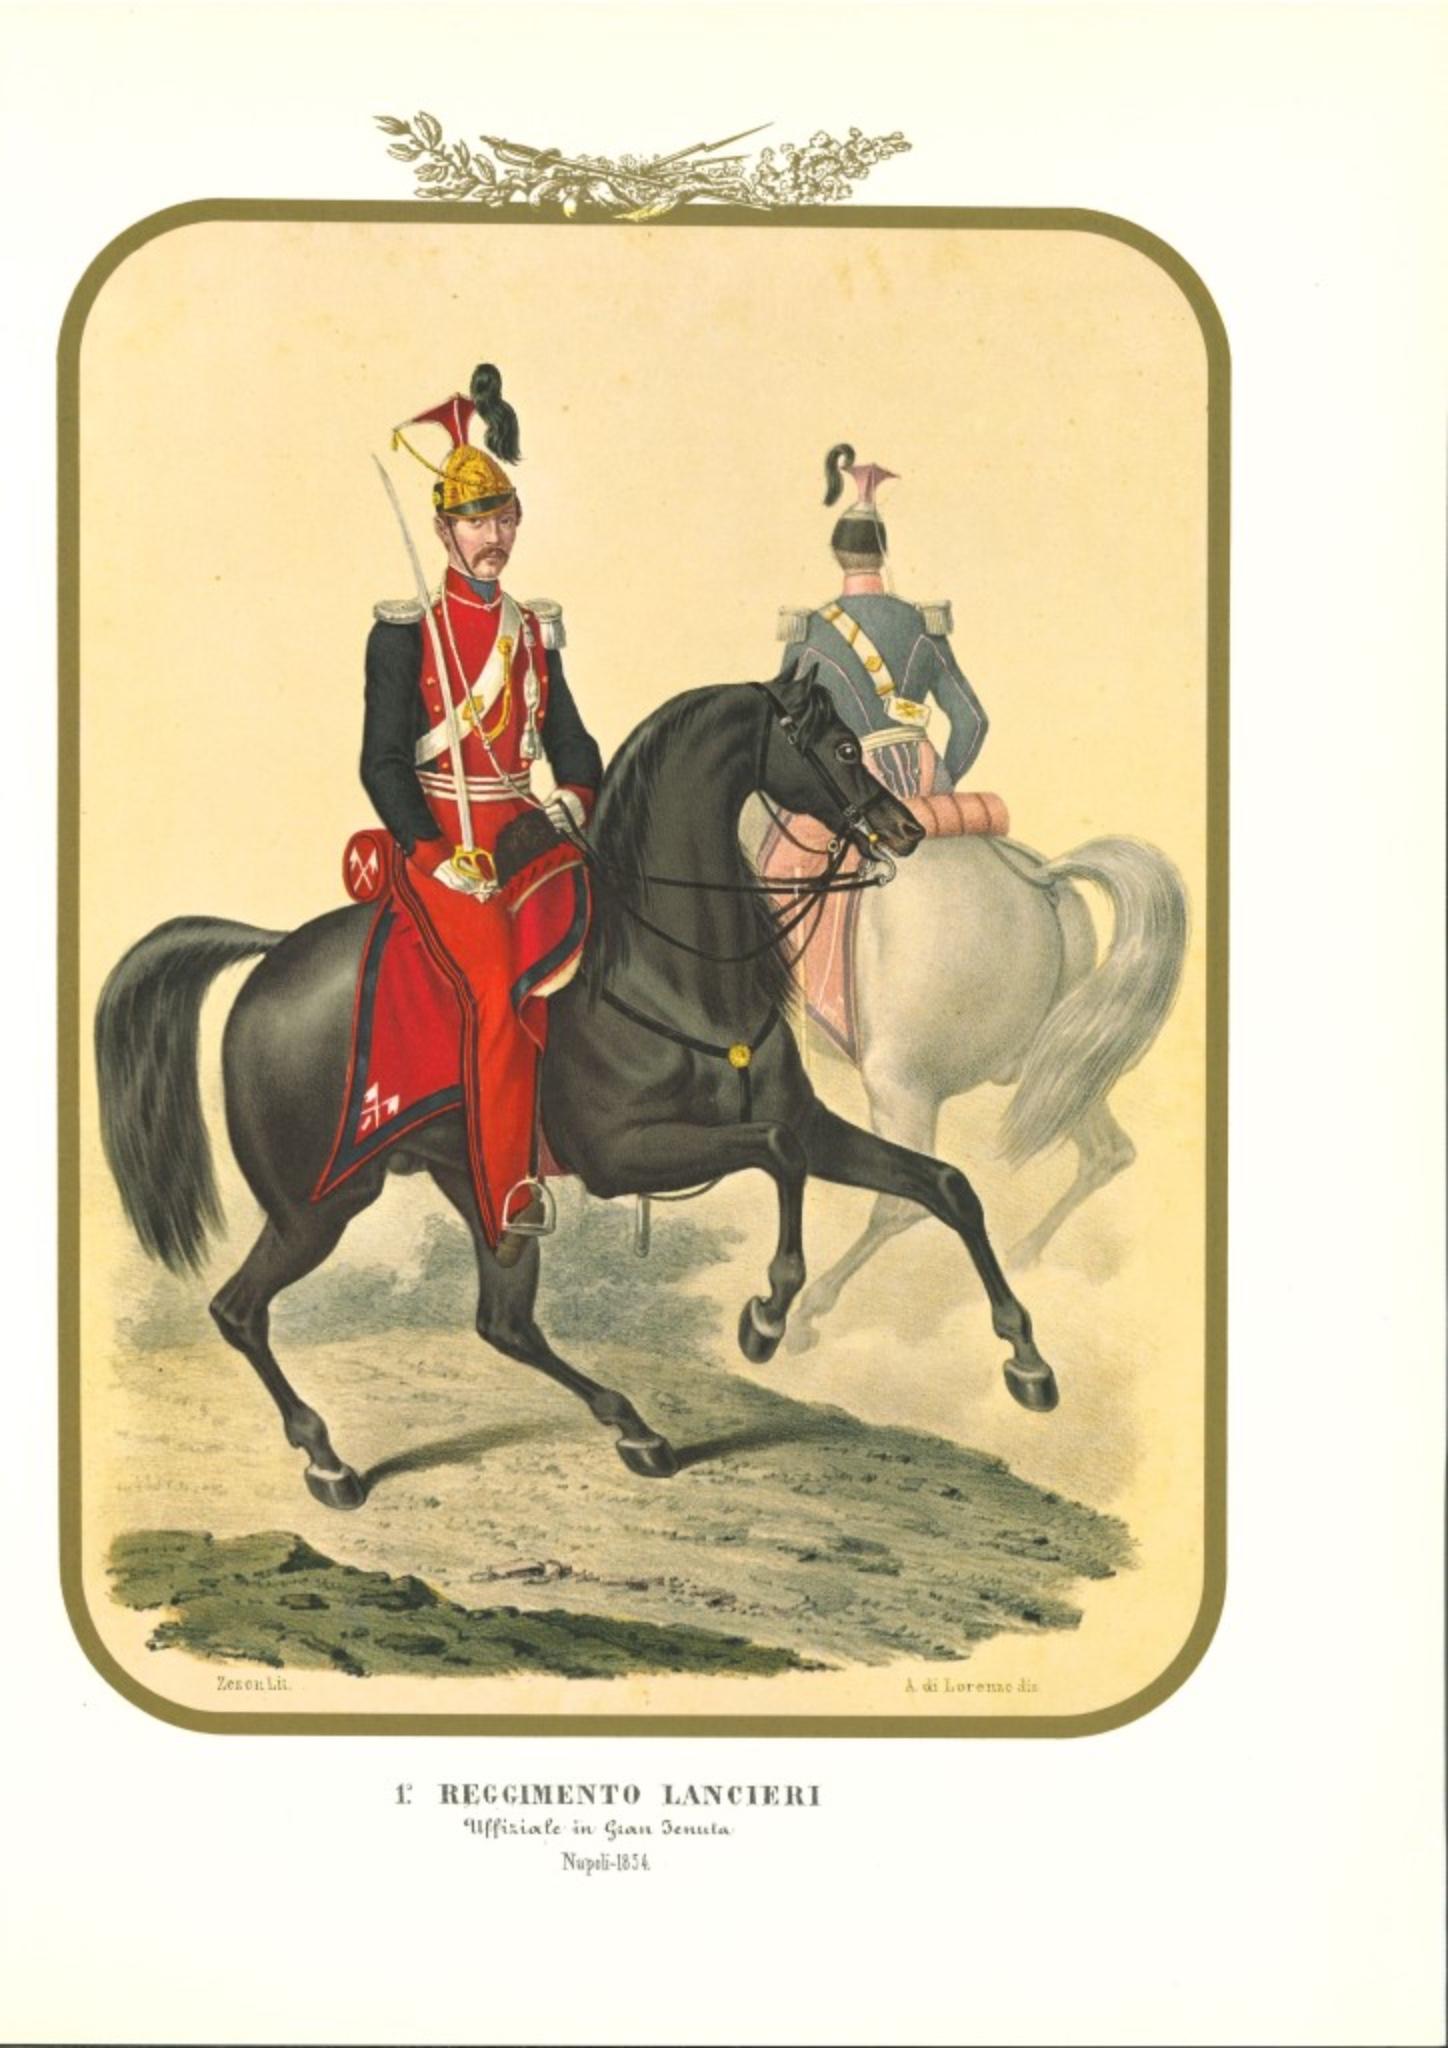 I Lancers Regiment est une lithographie d'Antonio Zezon. Naples 1854.

Intéressante lithographie en couleur qui décrit deux membres du régiment des lanciers : au premier plan, un officier chevauchant son cheval.

En excellent état, cette estampe